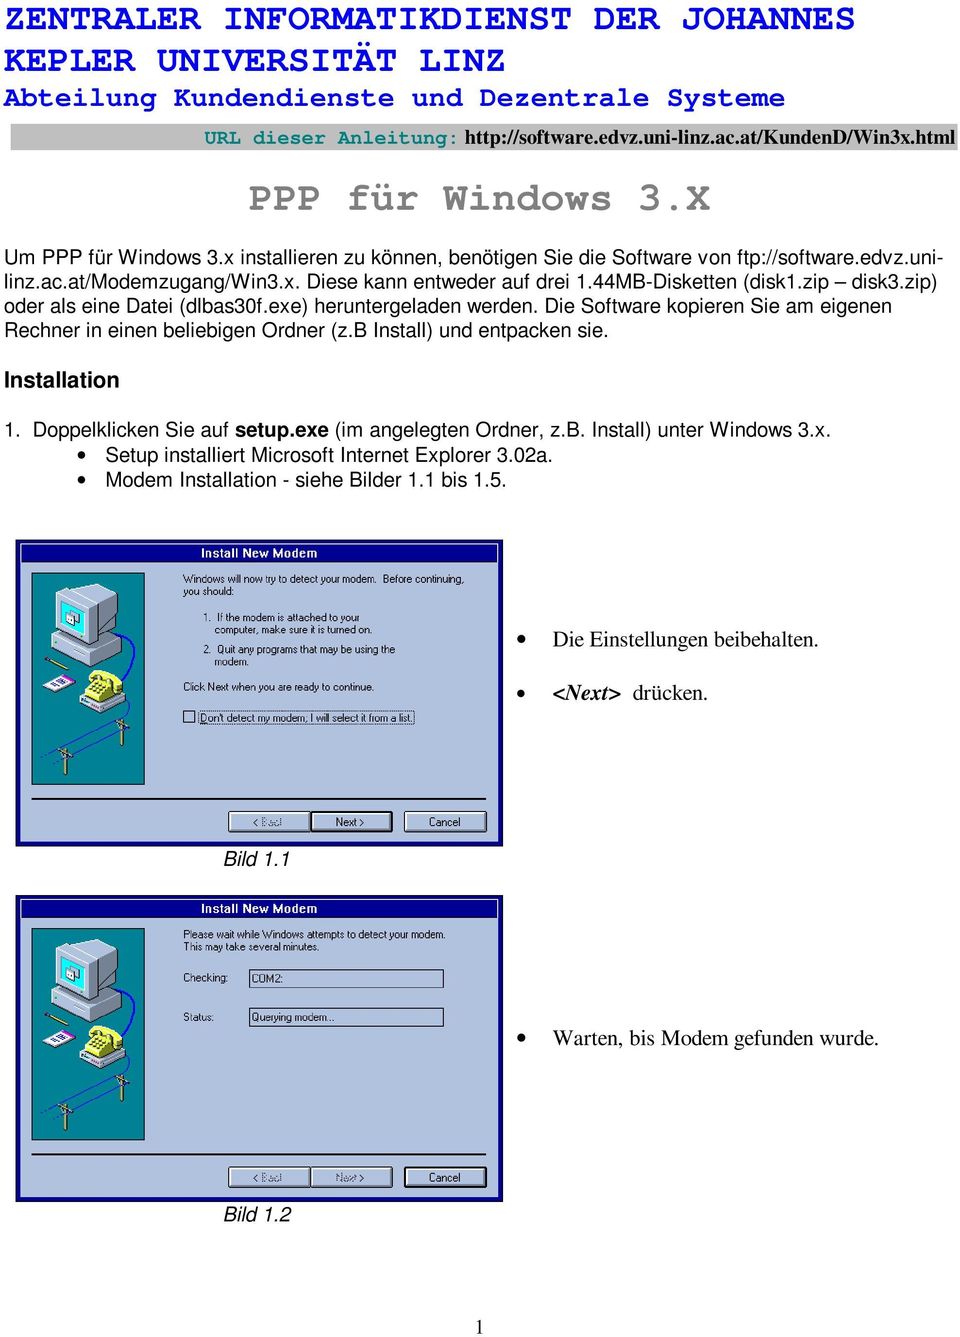 44MB-Disketten (disk1.zip disk3.zip) oder als eine Datei (dlbas30f.exe) heruntergeladen werden. Die Software kopieren Sie am eigenen Rechner in einen beliebigen Ordner (z.b Install) und entpacken sie.